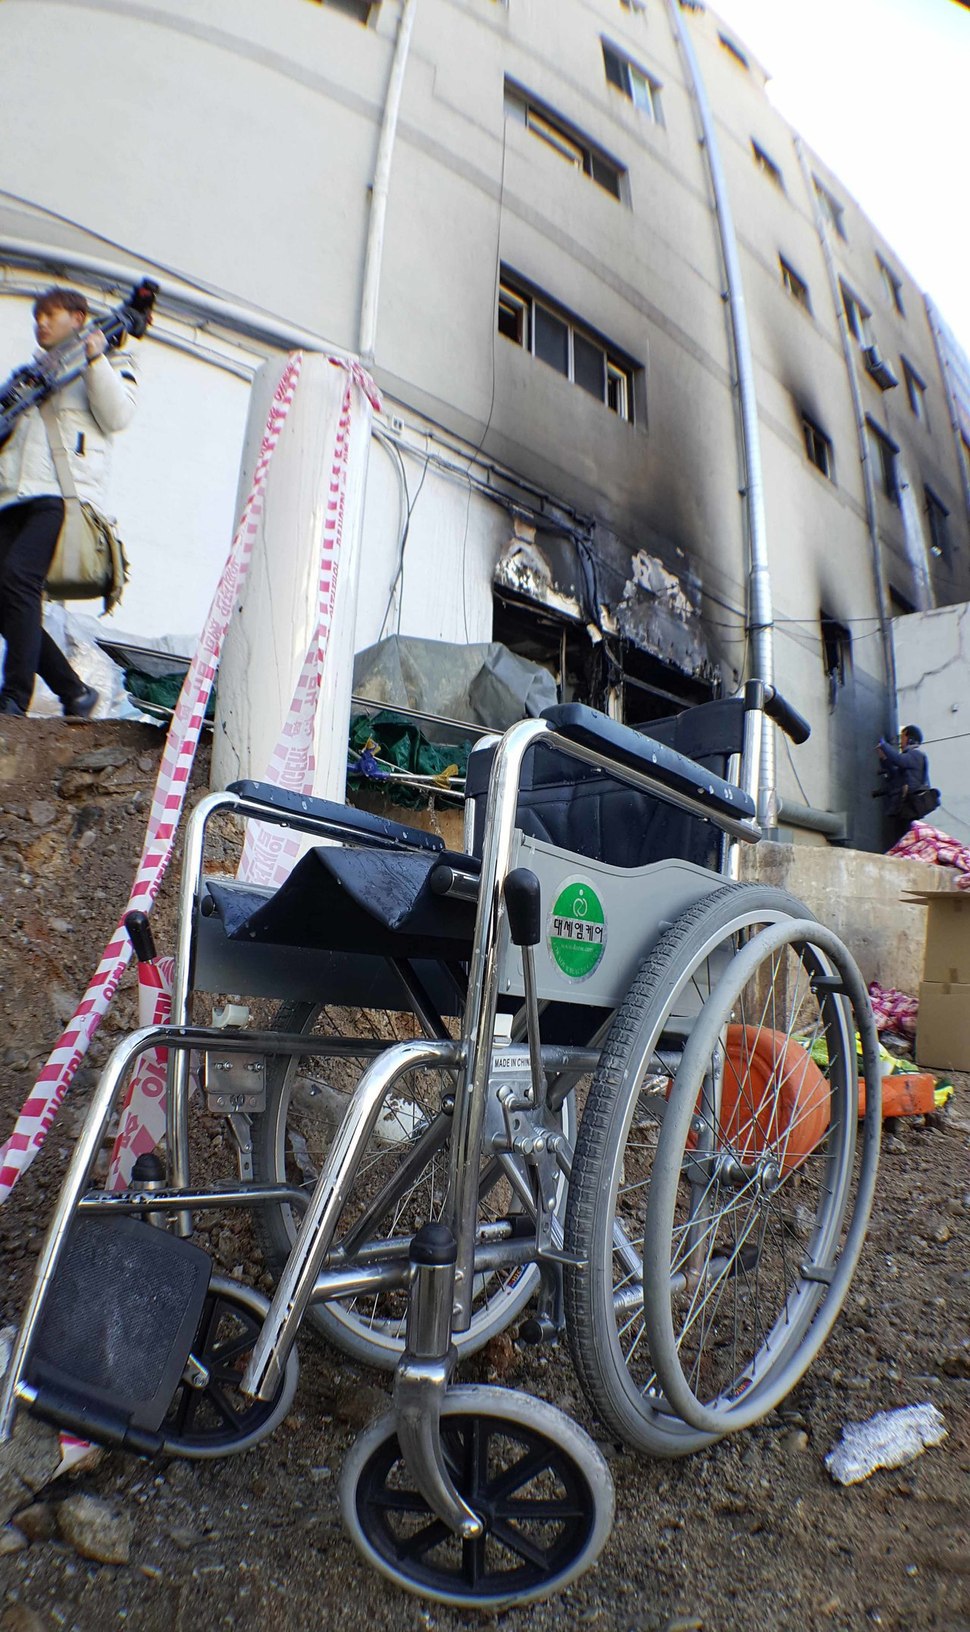 26일 아침 7시30분께 화재 참사가 발생한 경남 밀양시 가곡동 세종병원 뒷마당에 환자들이 사용했던 휠체어 한 대가 세워져 있다. 경남도민일보 제공